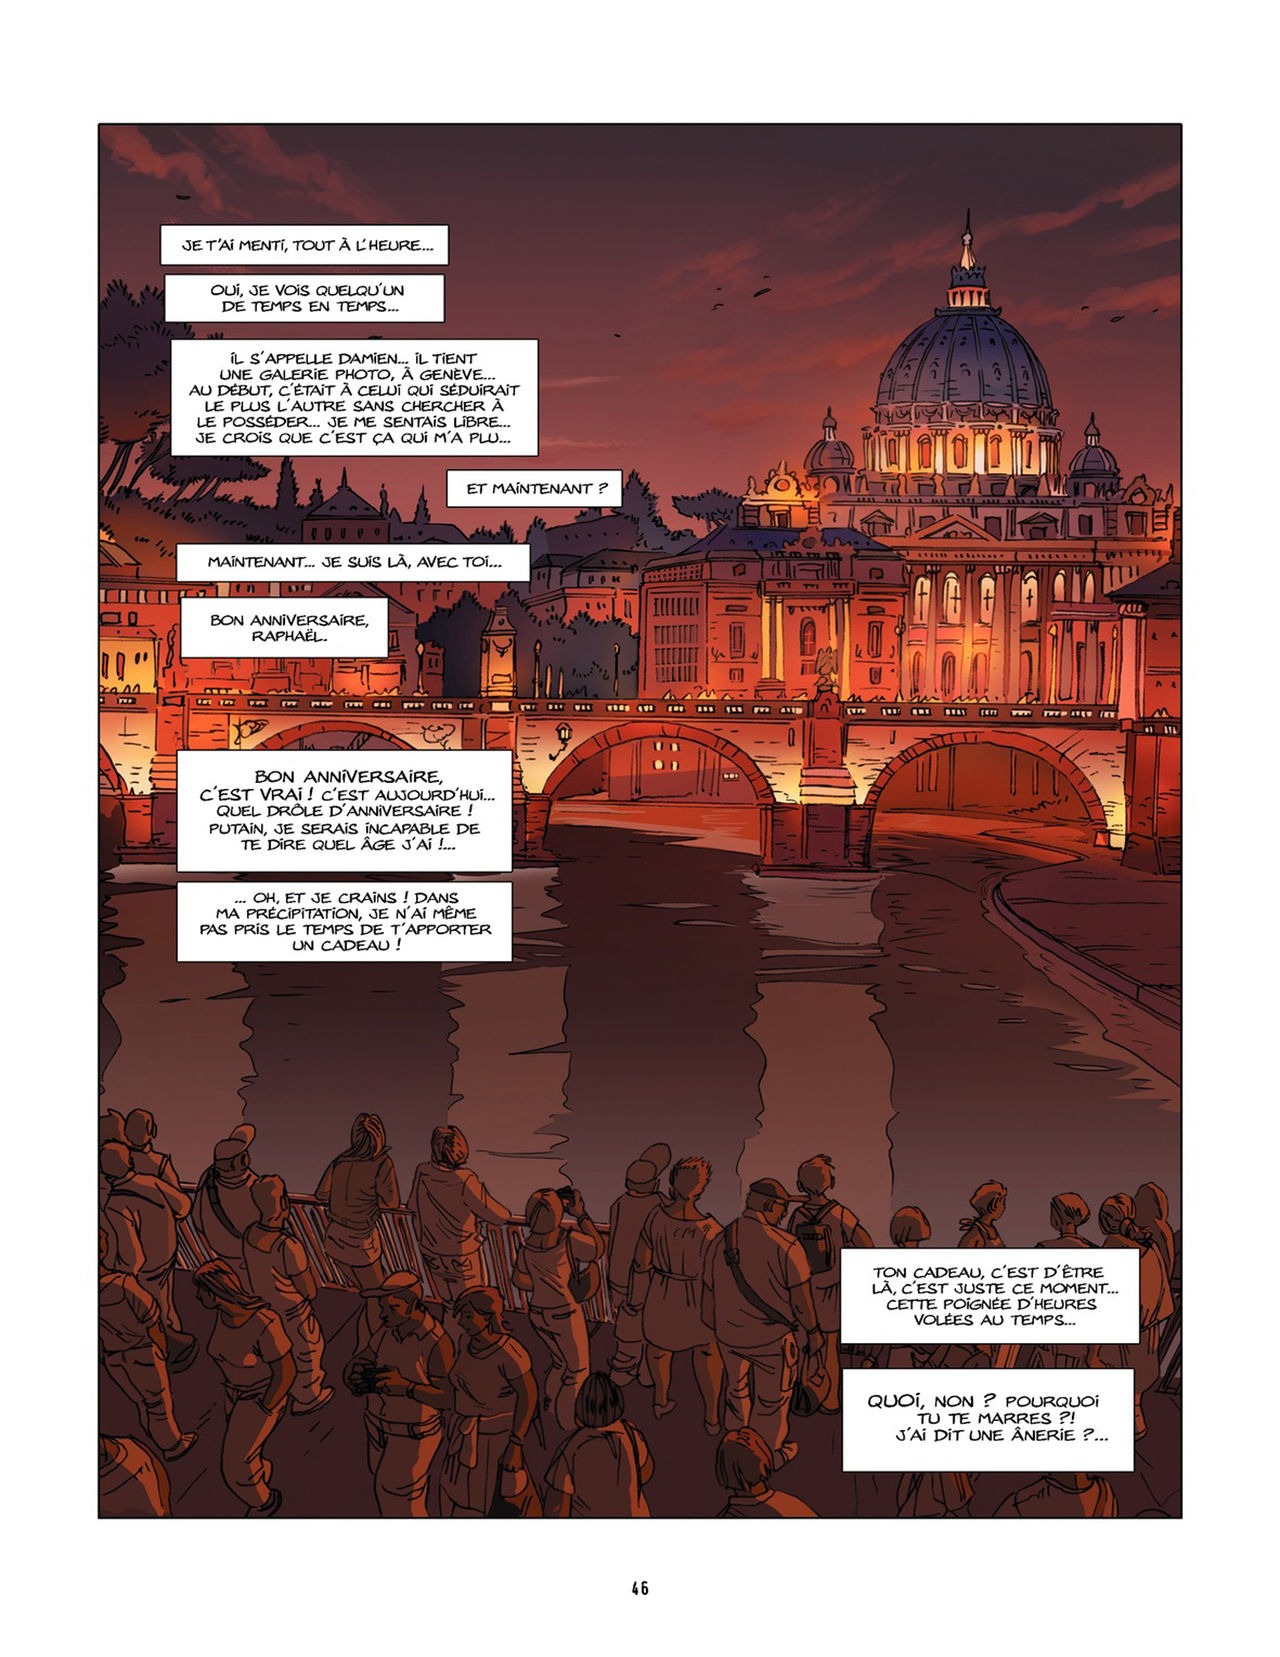 Une nuit à Rome - Tome 2 numero d'image 45